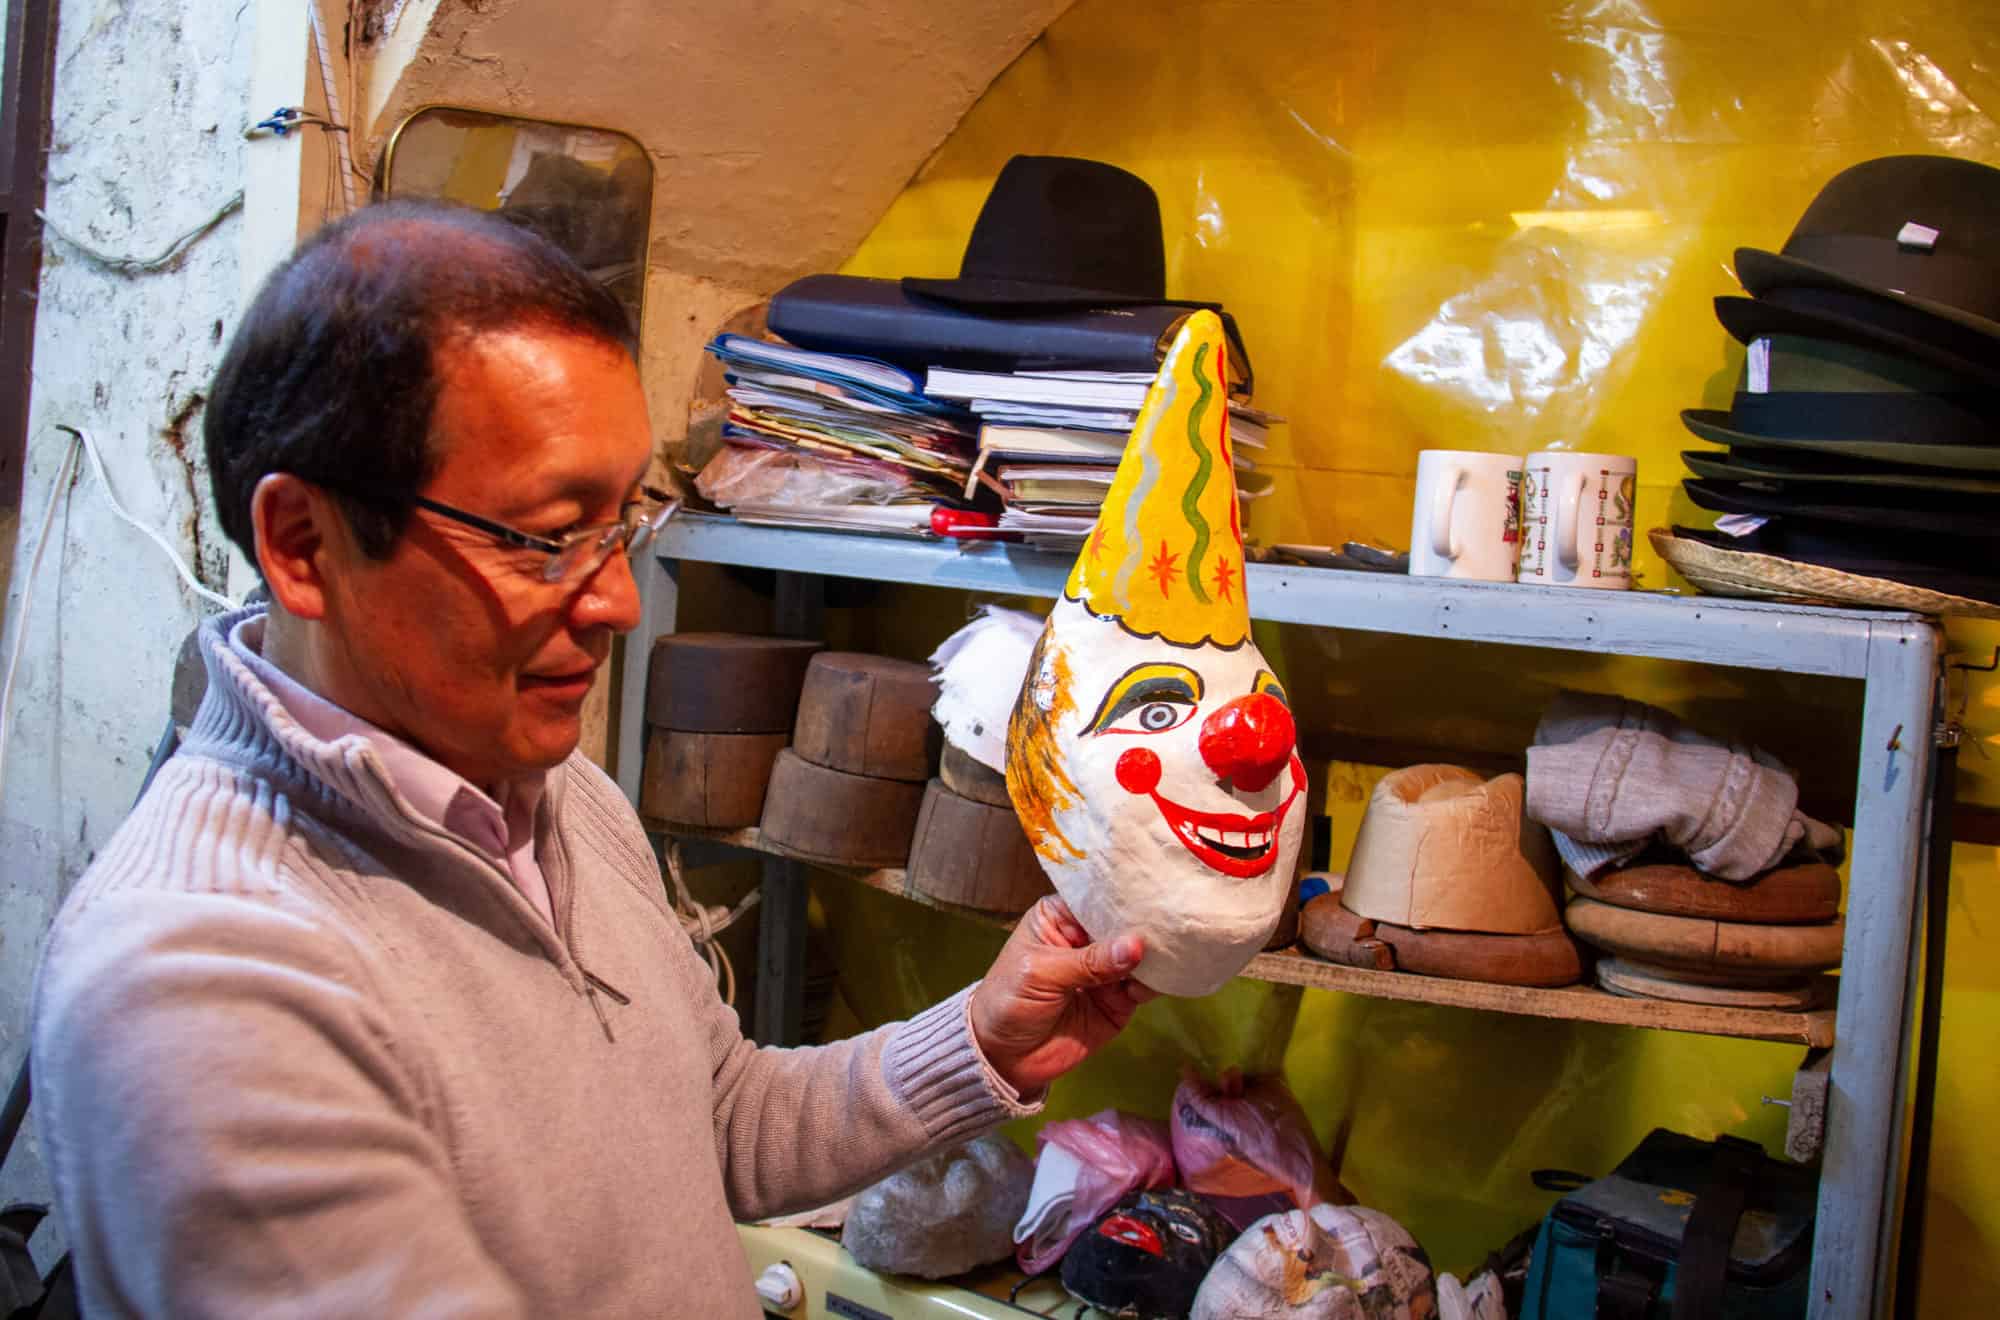 Ecuador - Quito - buying a traditional souvenirs in Ecuador - a mask